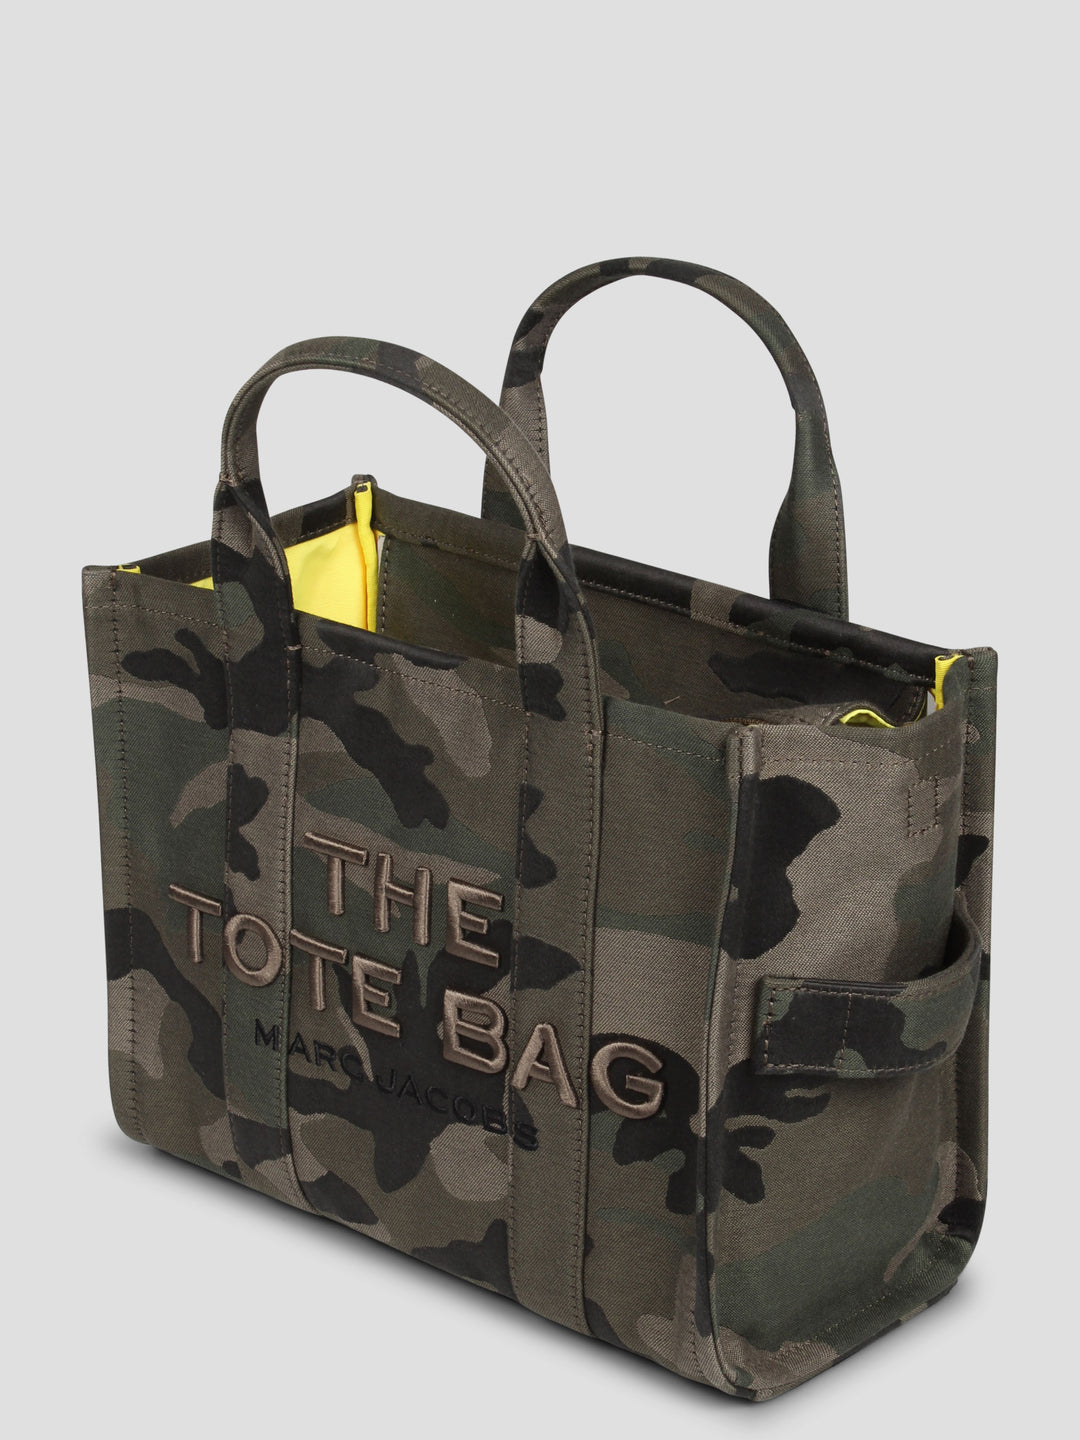 The camo jacquard medium tote bag